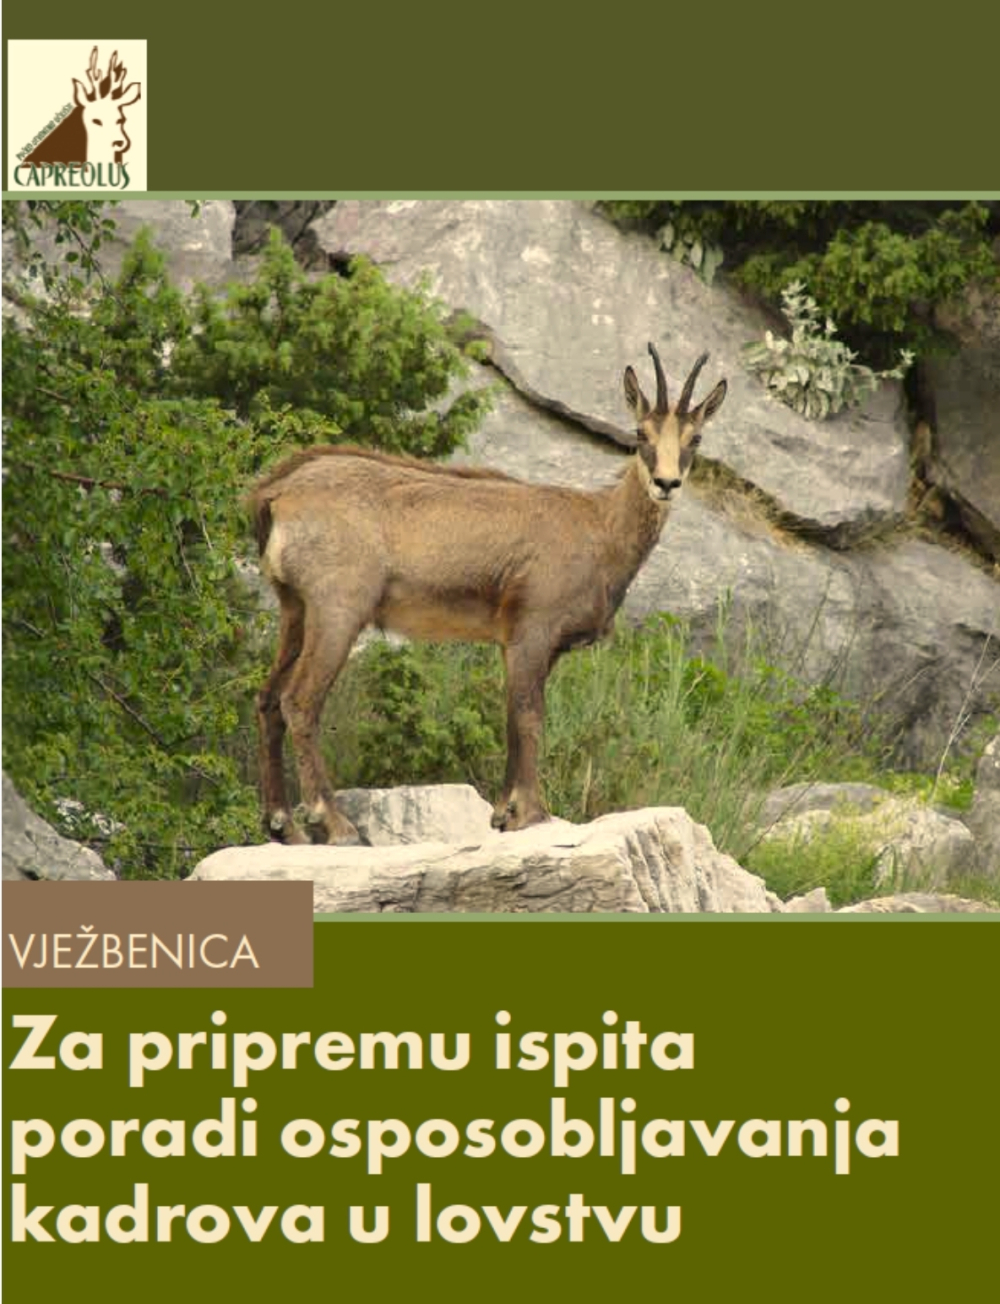 Požega.eu | KORISNO IZDANJE: Objavljena knjiga kao pomoć za osposobljavanje lovaca – koristit će je i Slavonci